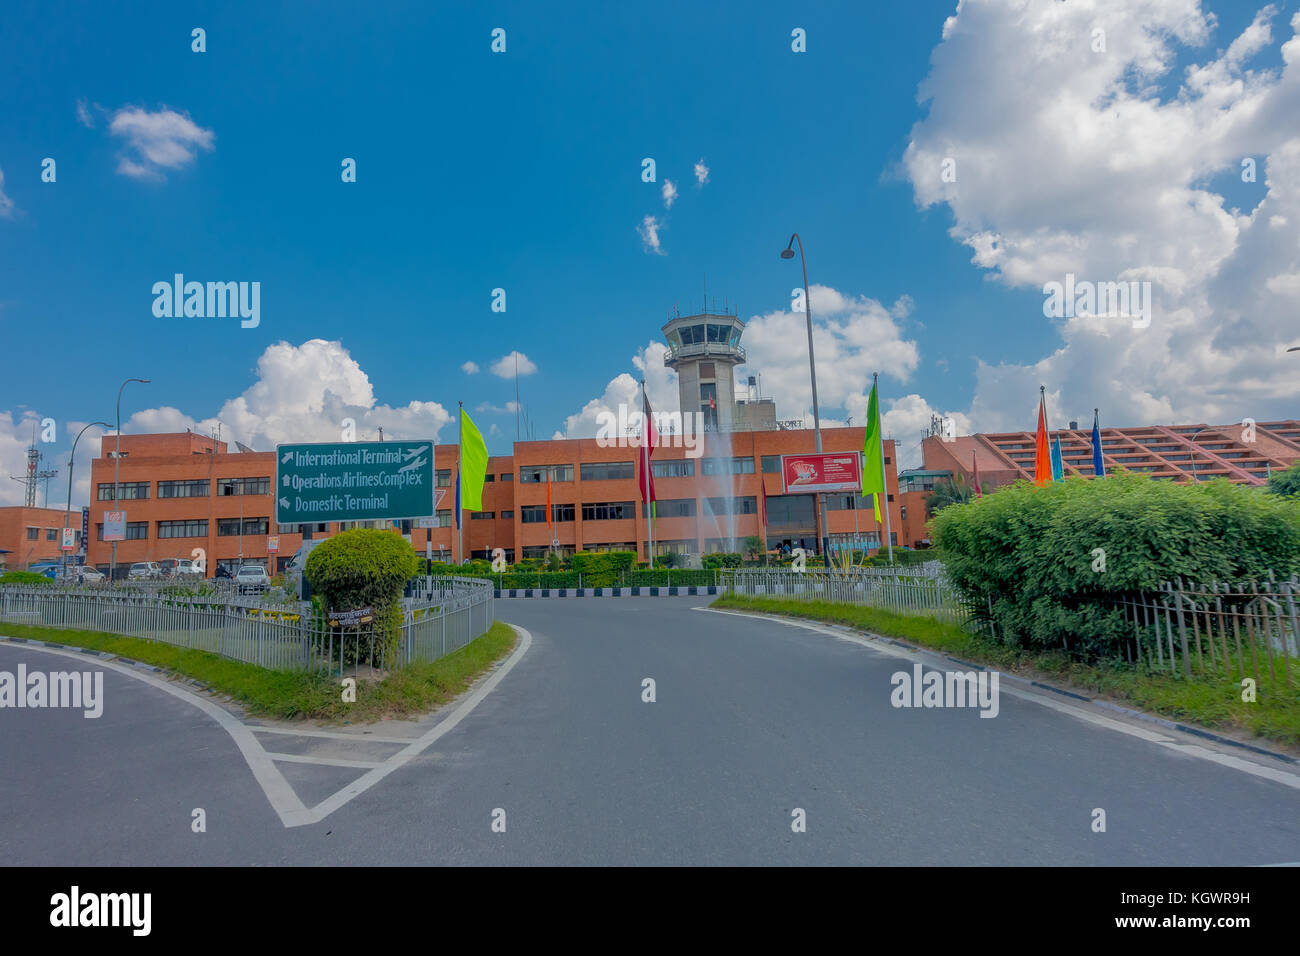 Katmandou, Népal - octobre 25th, 2016 : grand bâtiment de l'aéroport international de Tribhuvan dans un beau ciel bleu à Katmandou au Népal. n'existent qu'un aéroport international au Népal Banque D'Images